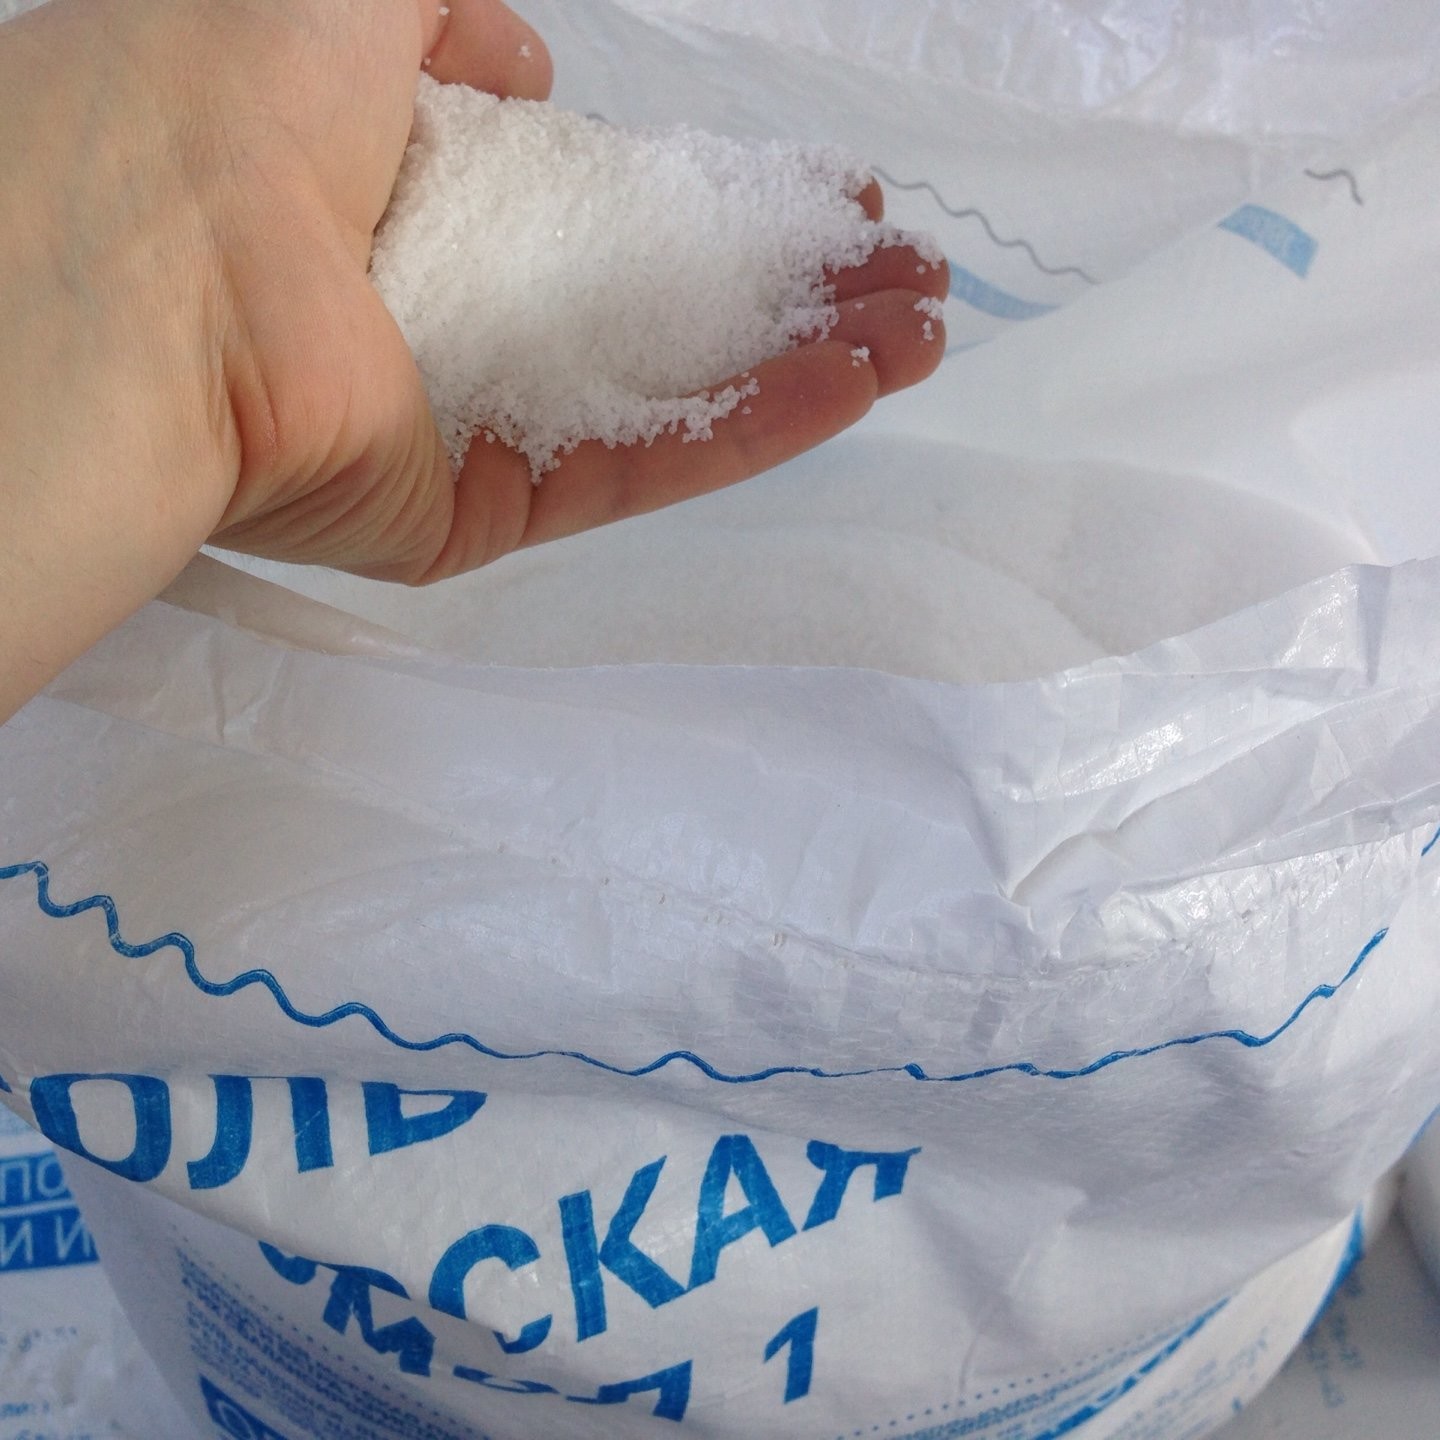 Соль пищевая Морская натуральная, 25 кг, ТМ "БСК", средняя, помол 1 (Импортная, БСК)